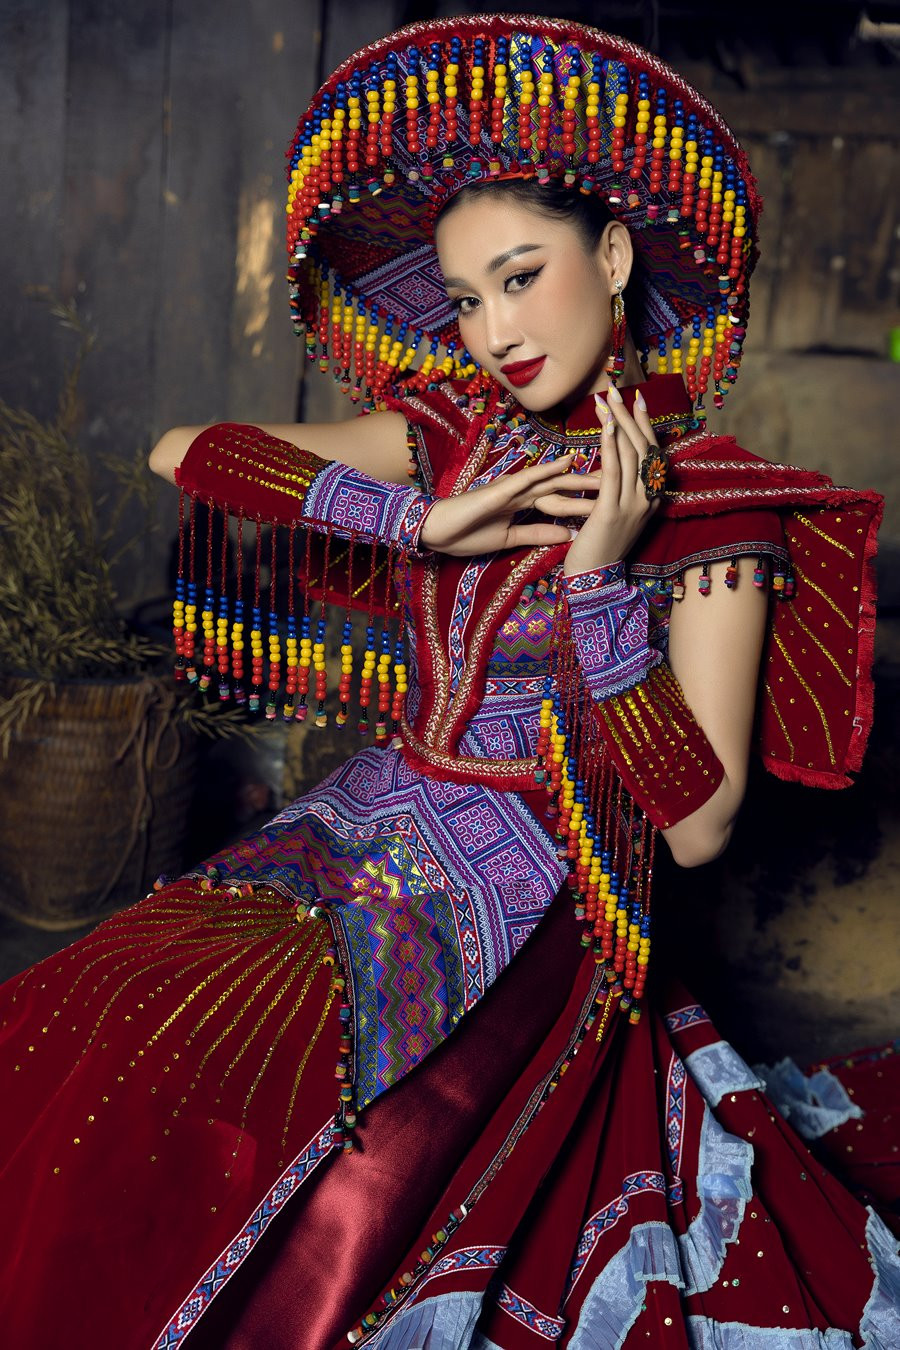 Trang phục dân tộc là một phần không thể thiếu trong văn hóa Việt Nam. Chúng thể hiện sự đa dạng và độc đáo của các dân tộc tại Việt Nam. Hãy khám phá những bộ trang phục đậm chất dân tộc và tìm hiểu về nền văn hóa đa dạng của Việt Nam.